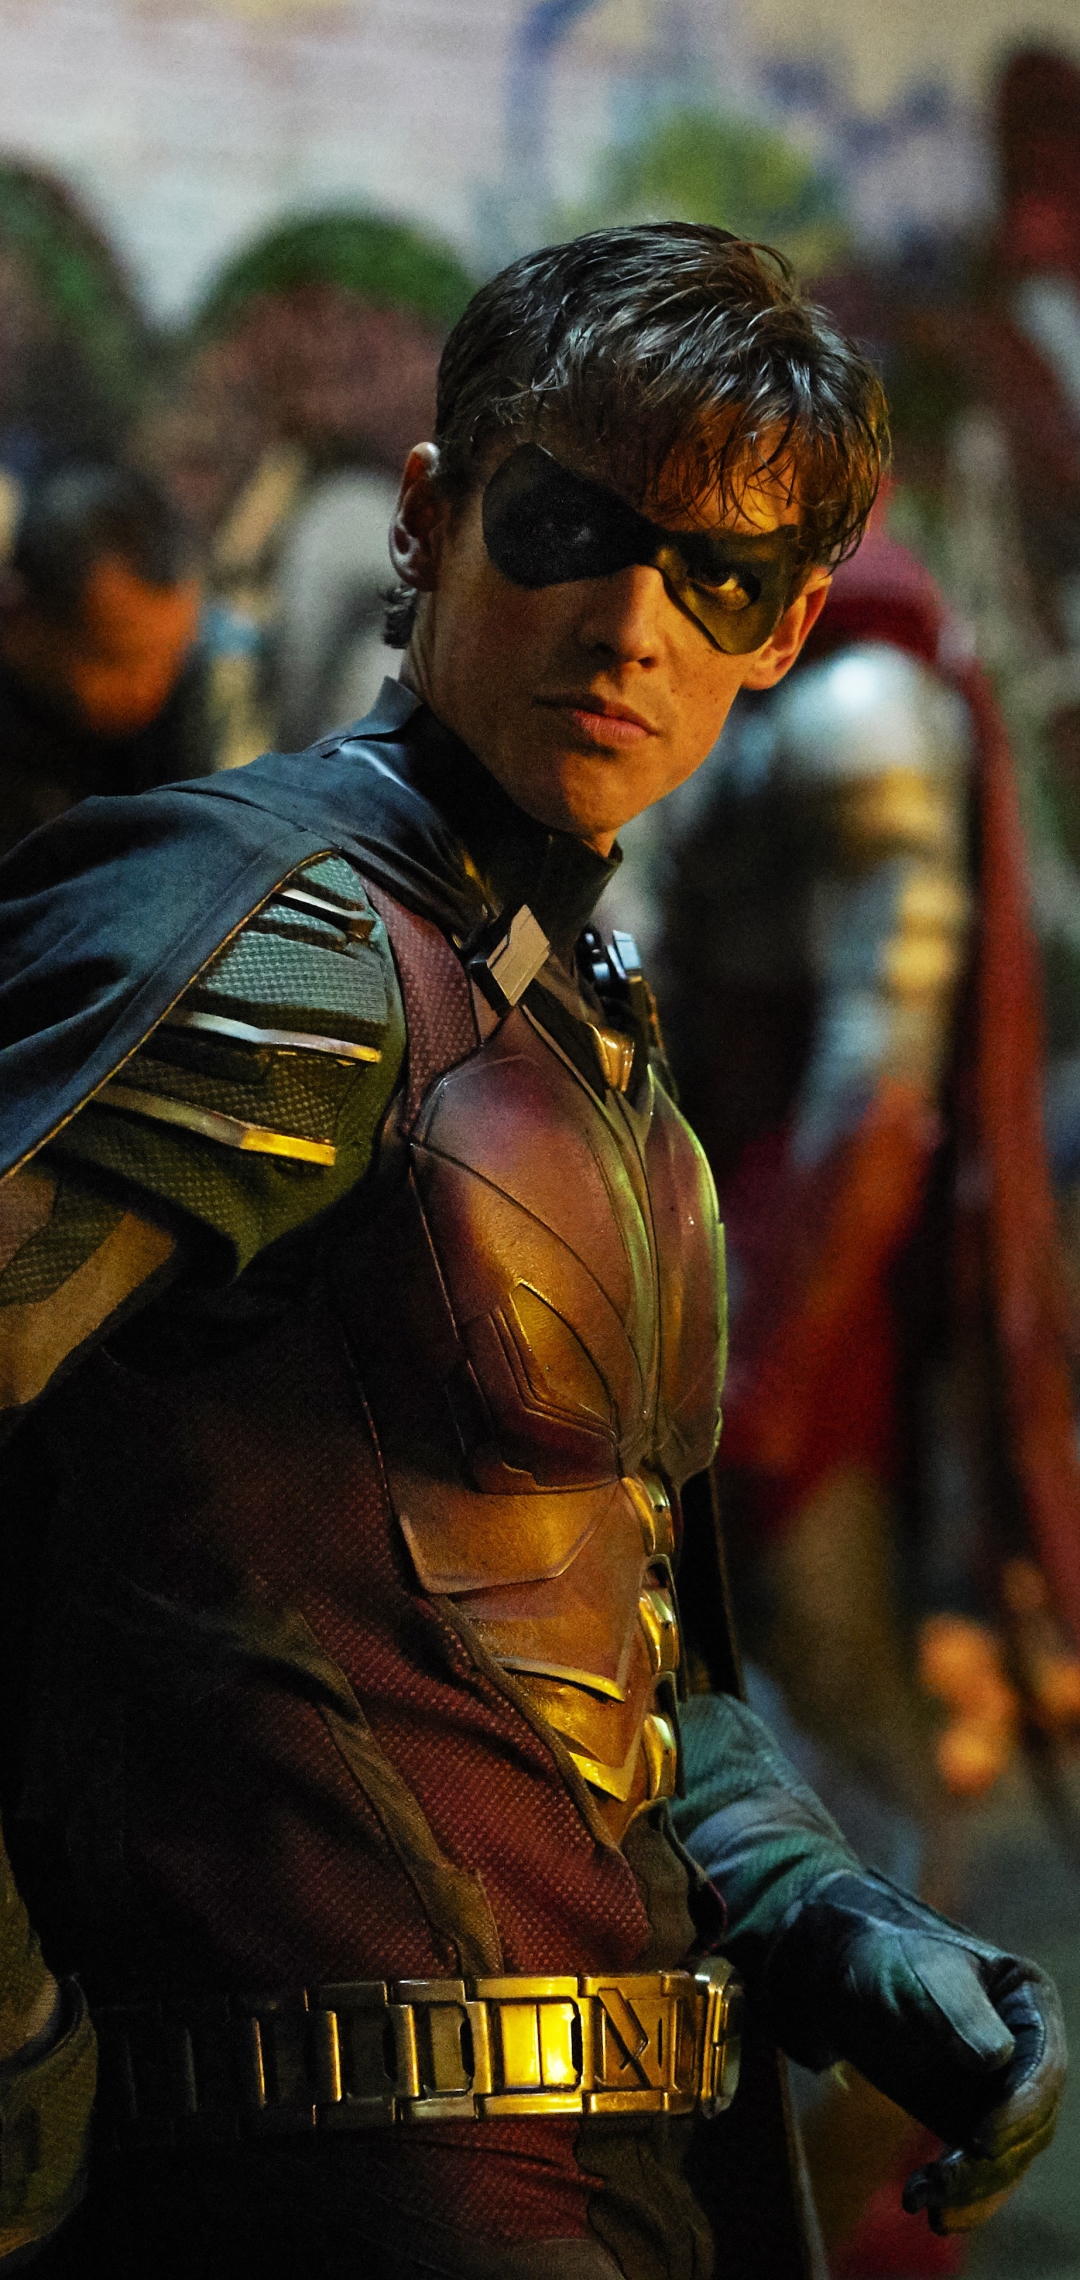 Dick Grayson as Robin in Titans